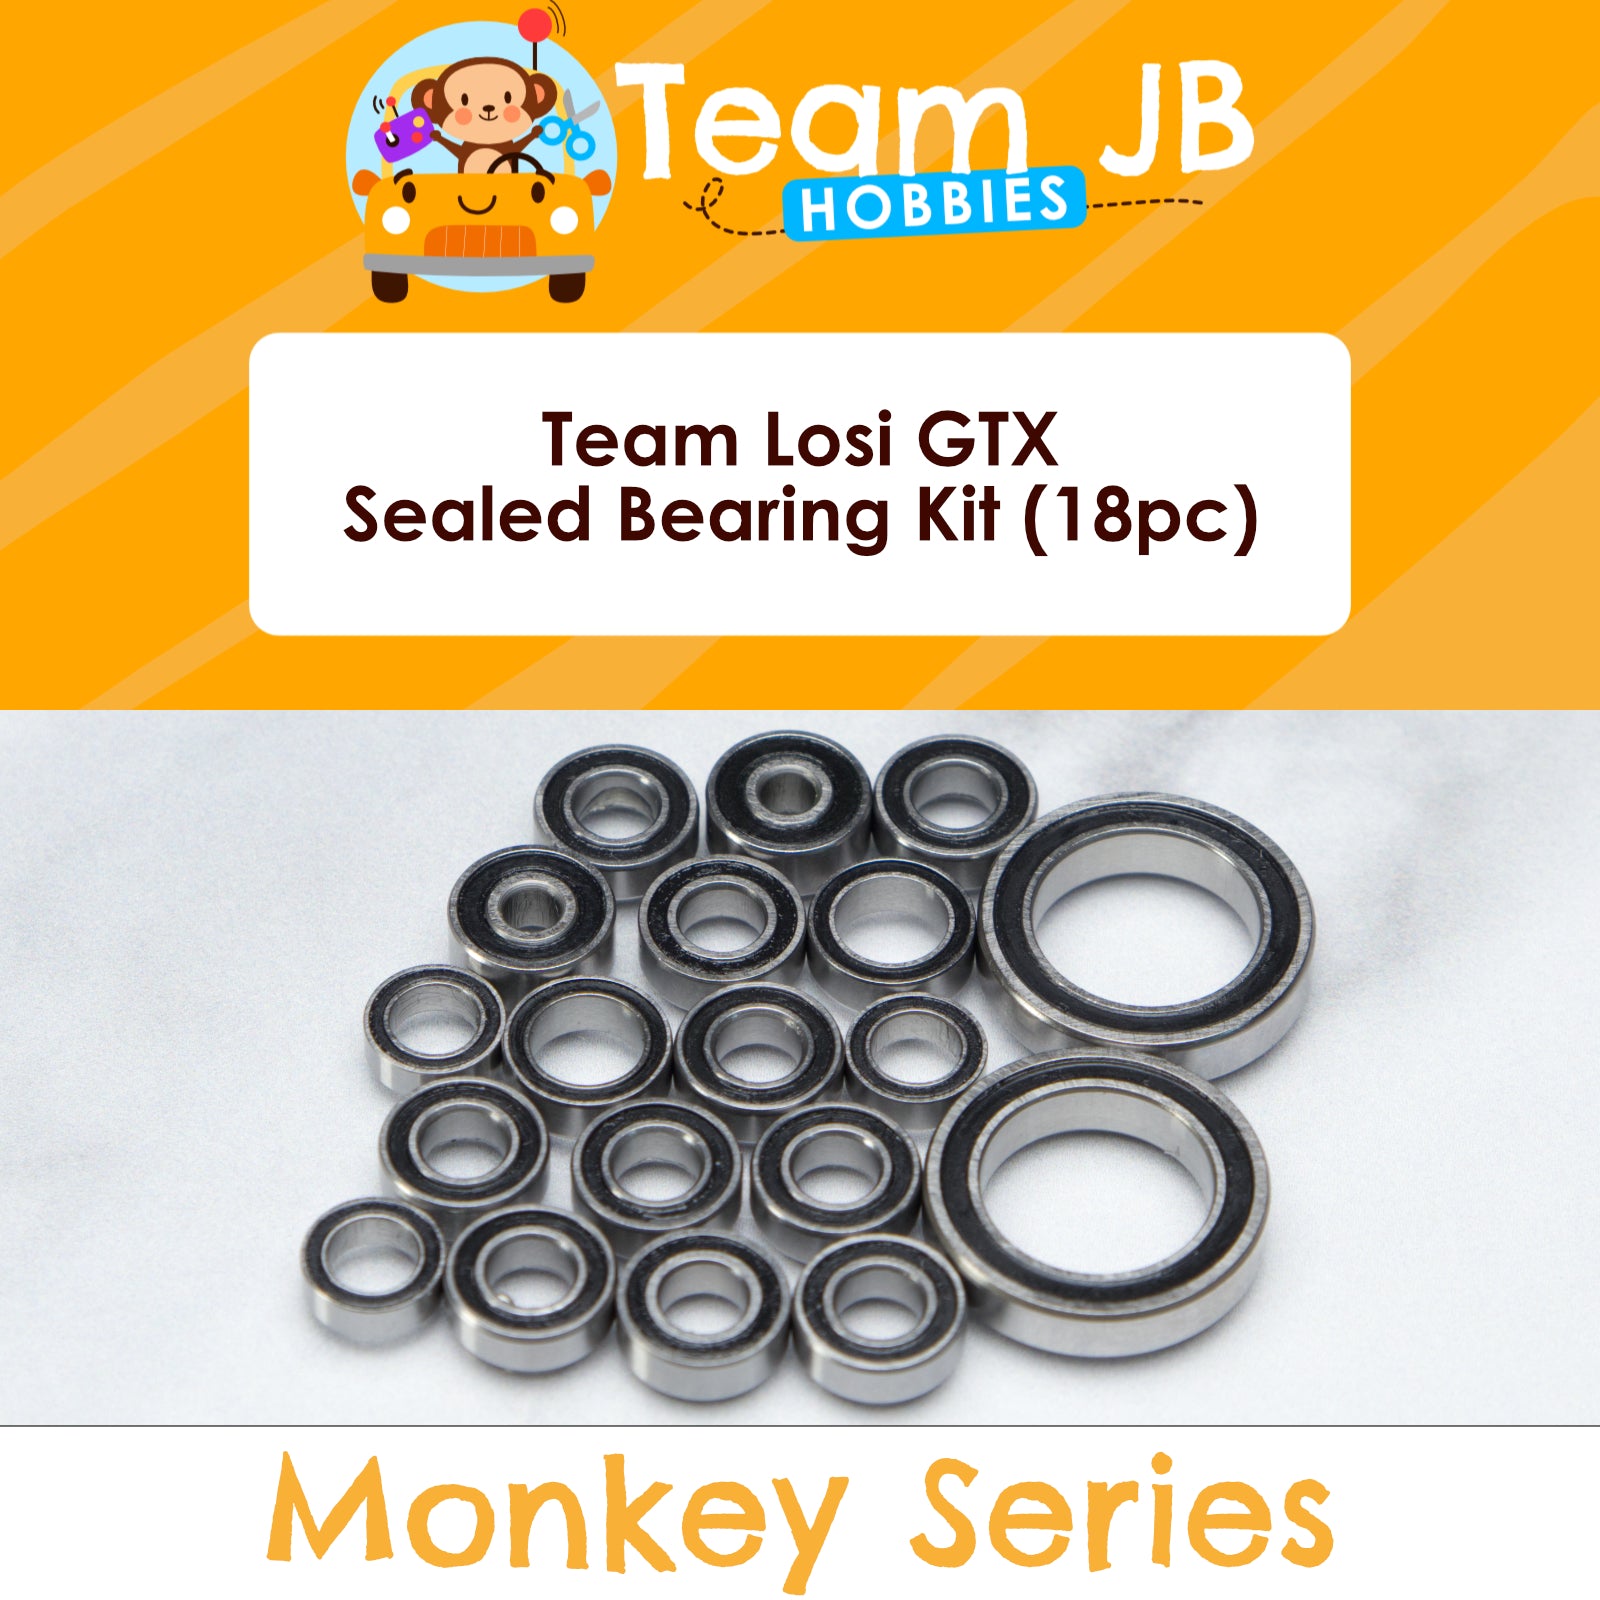 Team Losi GTX - Sealed Bearing Kit